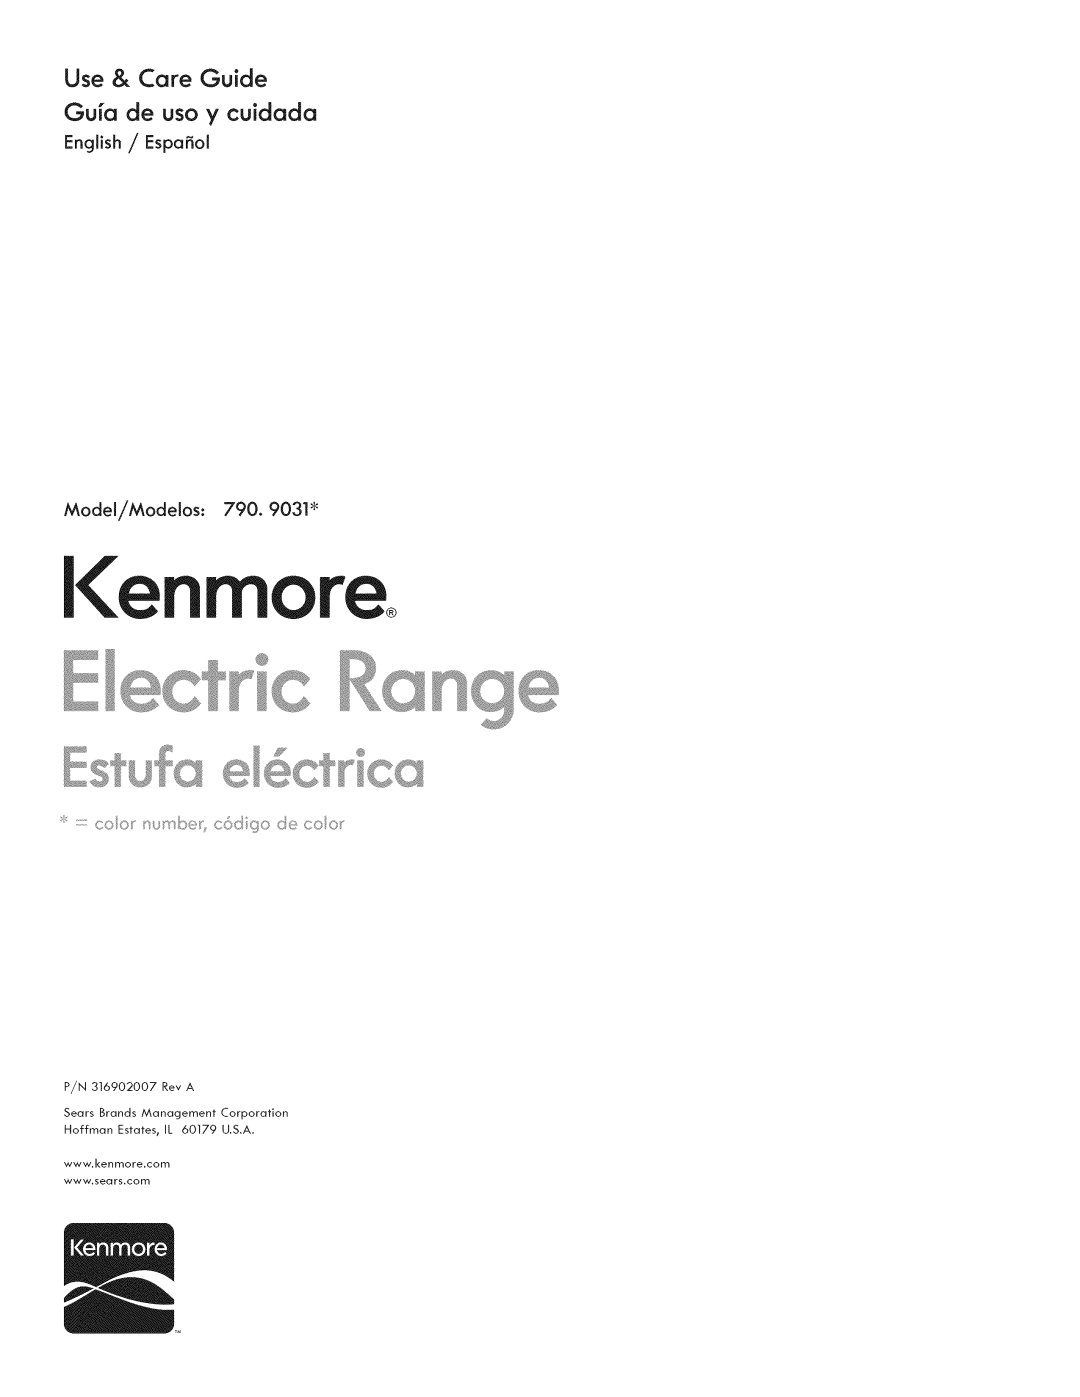 Kenmore 790.9031 manual Use & Care Guide Gu a de uso y cuidada, English / Espafiol Model/Modelos, I en 